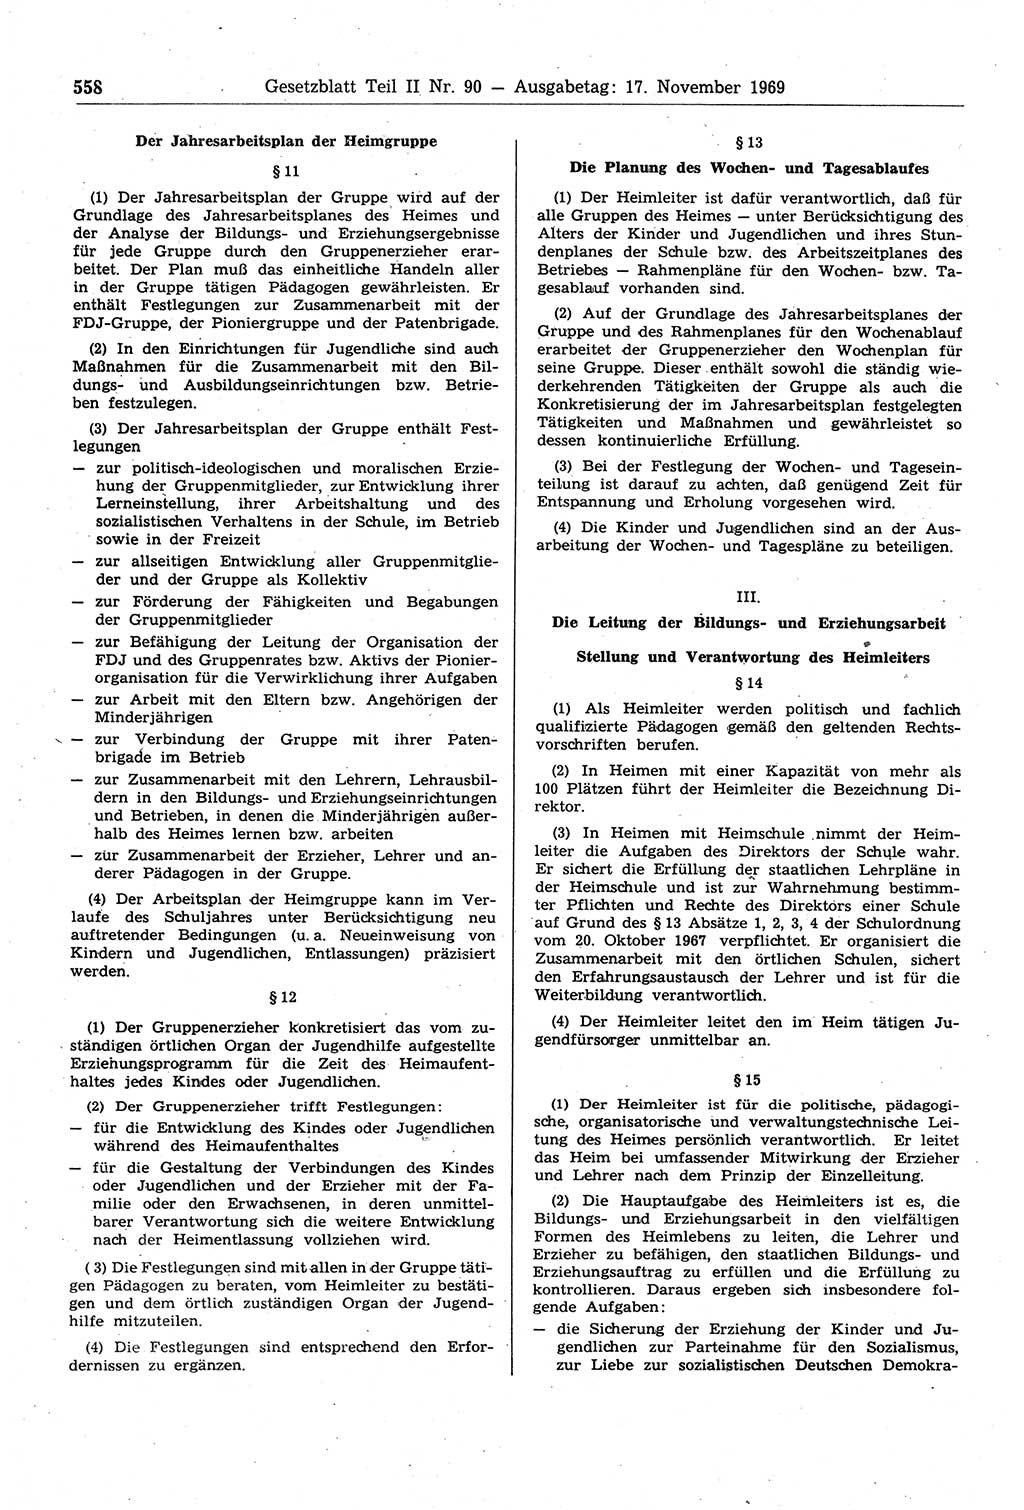 Gesetzblatt (GBl.) der Deutschen Demokratischen Republik (DDR) Teil ⅠⅠ 1969, Seite 558 (GBl. DDR ⅠⅠ 1969, S. 558)